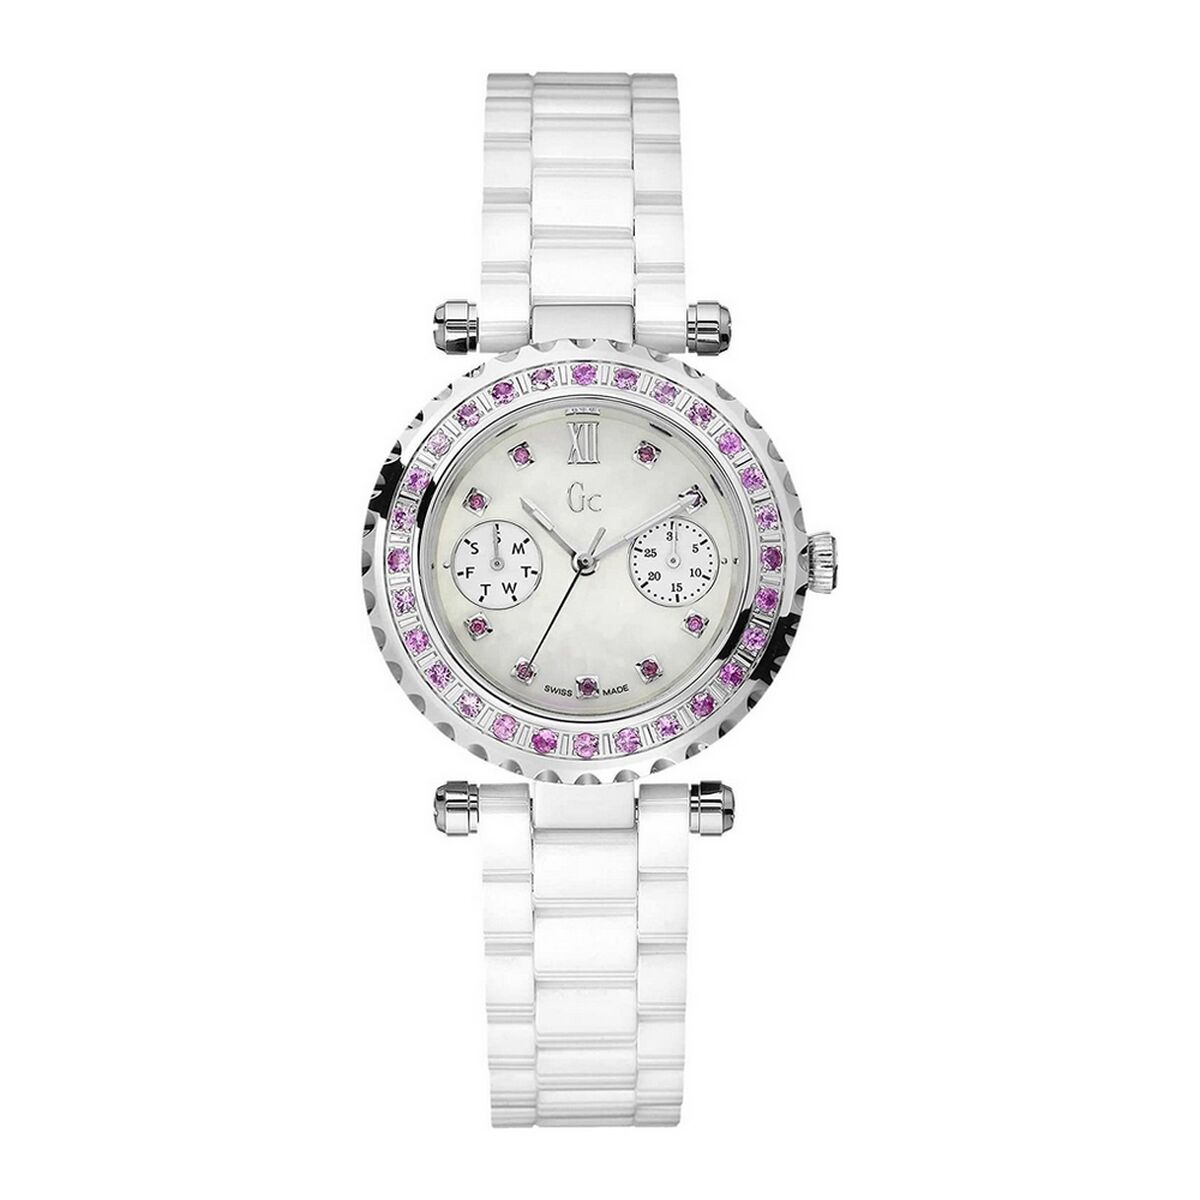 Osta tuote Naisten rannekellot GC Watches 92000L1 (Ø 36 mm) verkkokaupastamme Korhone: Muoti & Asusteet 20% alennuksella koodilla VIIKONLOPPU